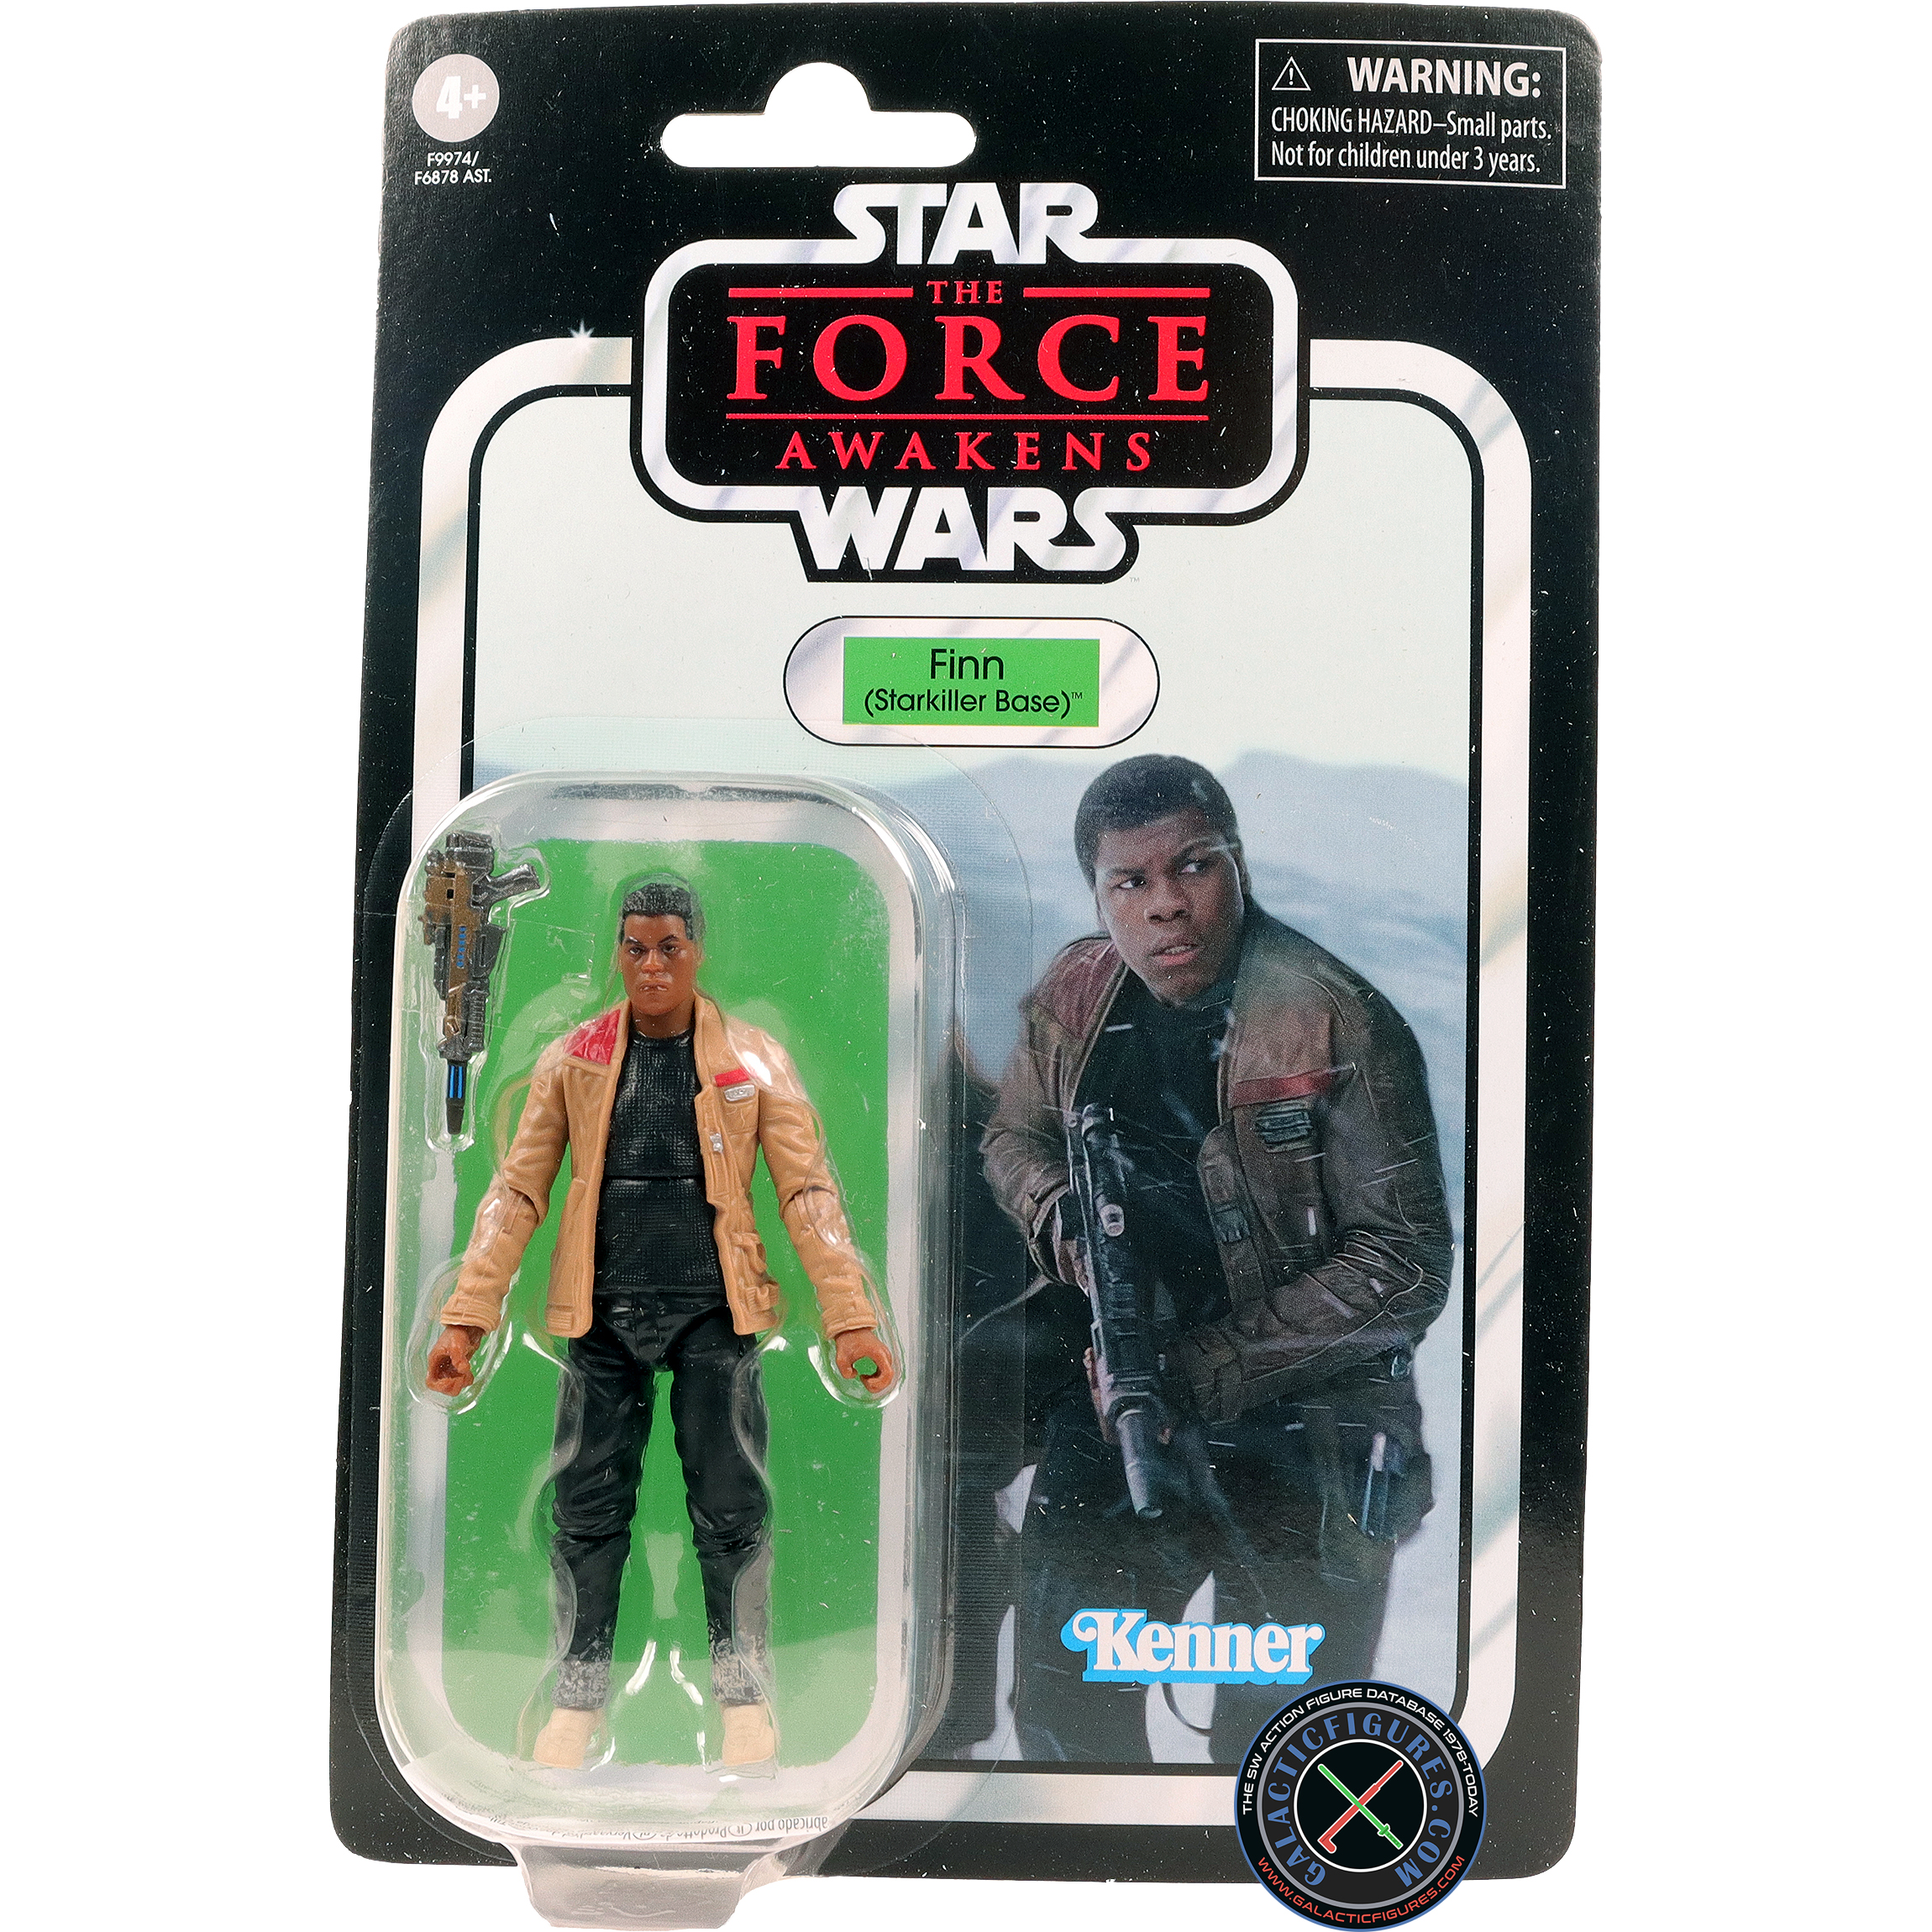 Finn The Force Awakens